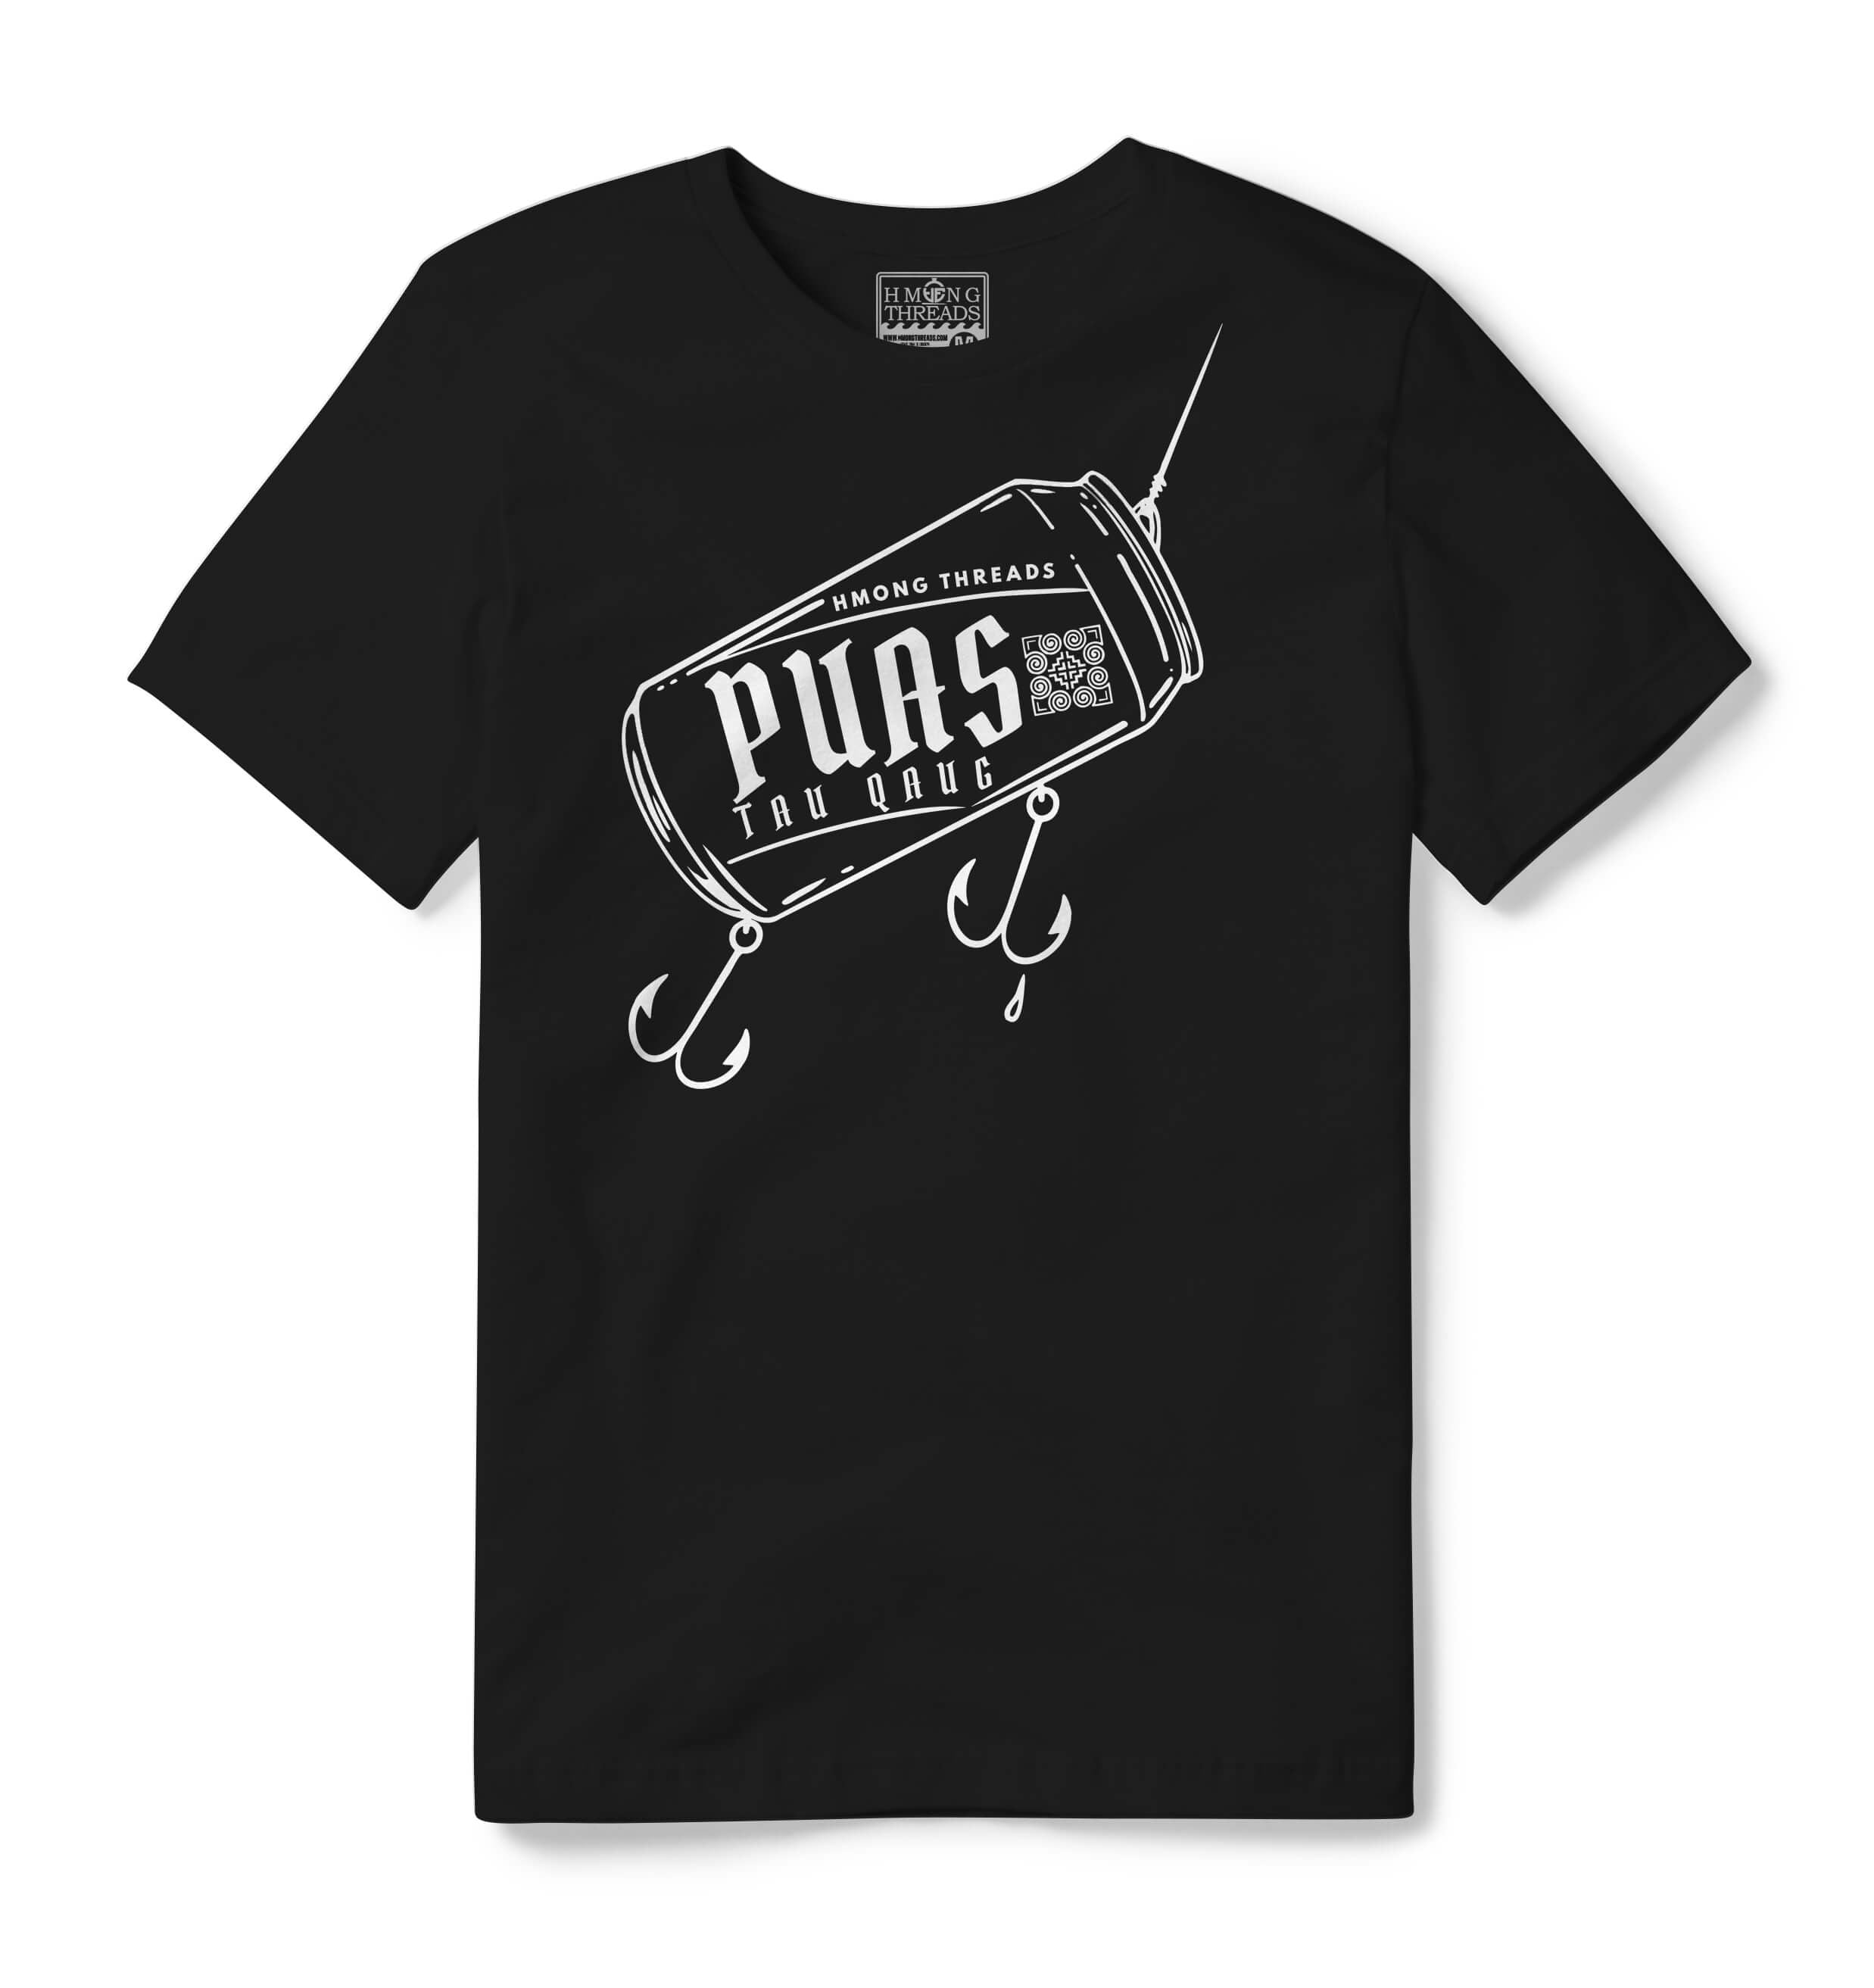 PUAS TAU QAUG - BLACK T-SHIRT